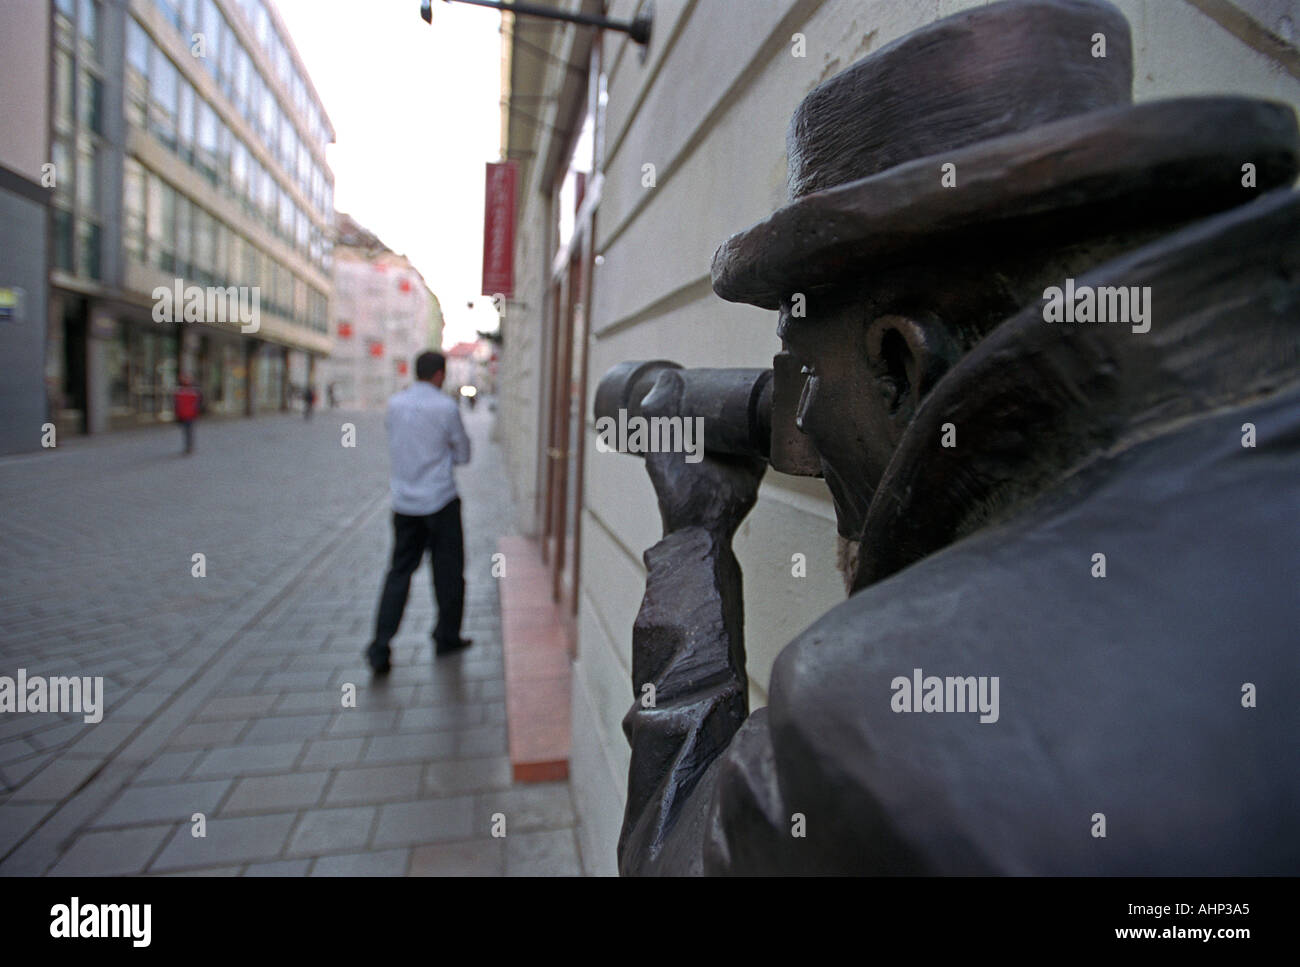 Statue caméraman à Bratislava Slovaquie Banque D'Images